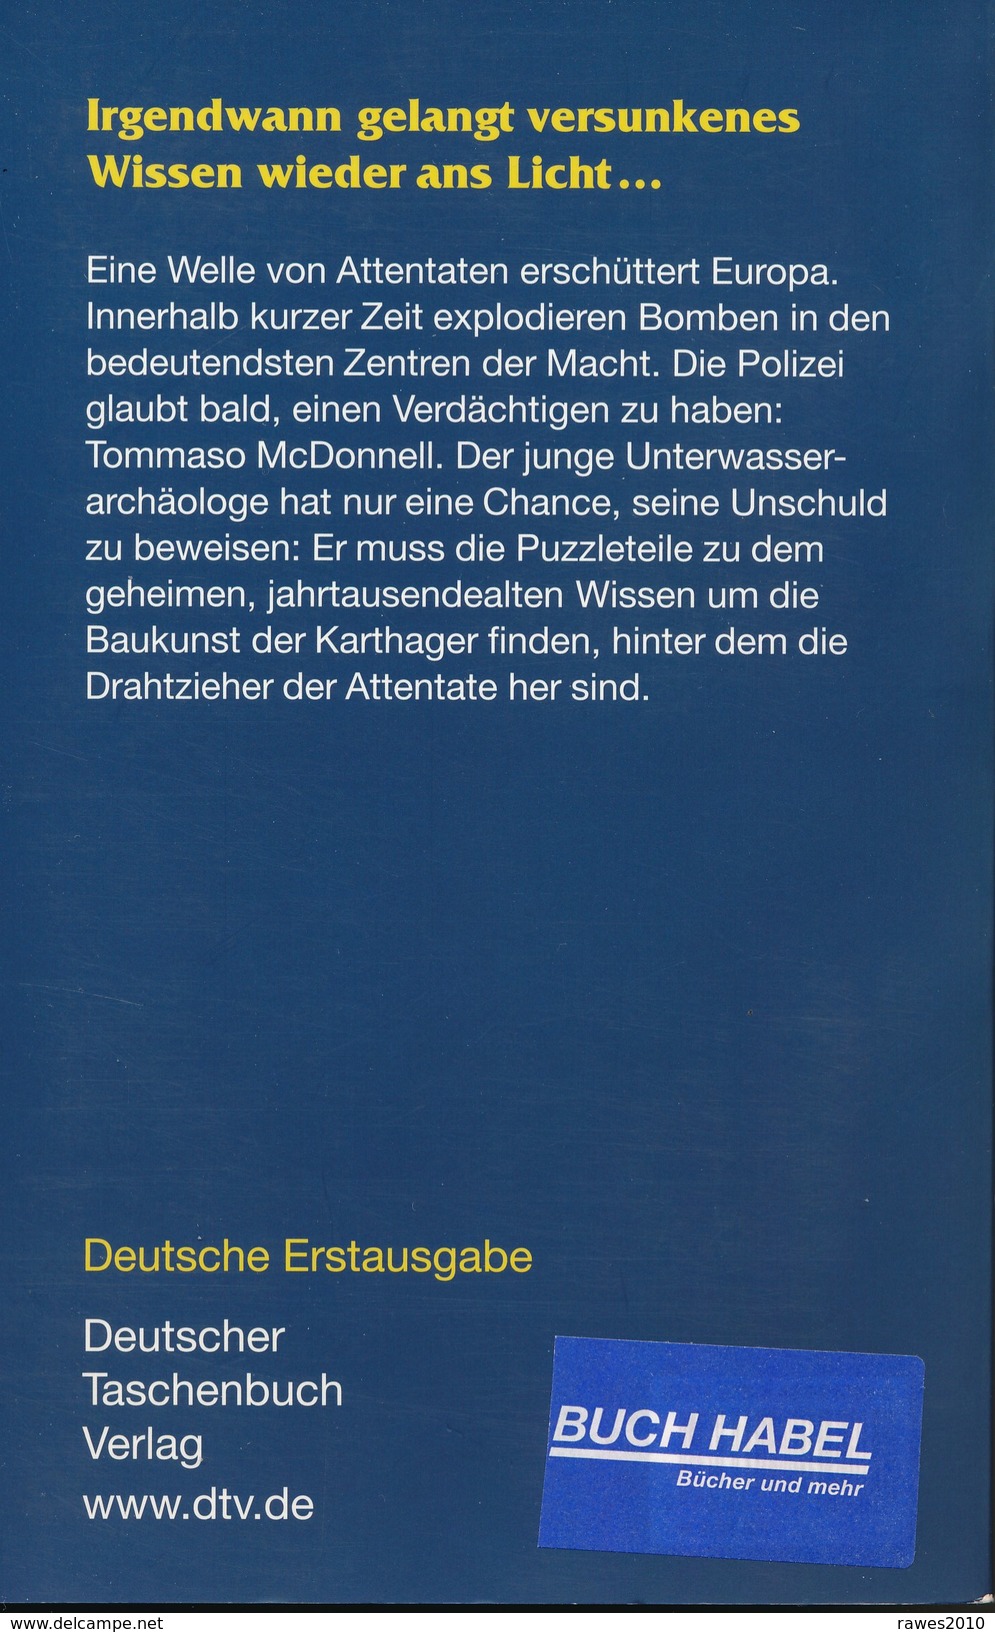 Taschenbuch: Denis Lepee: Der Carthago Code Thriller Deutscher Taschenbuch Verlag 2008 - Thriller